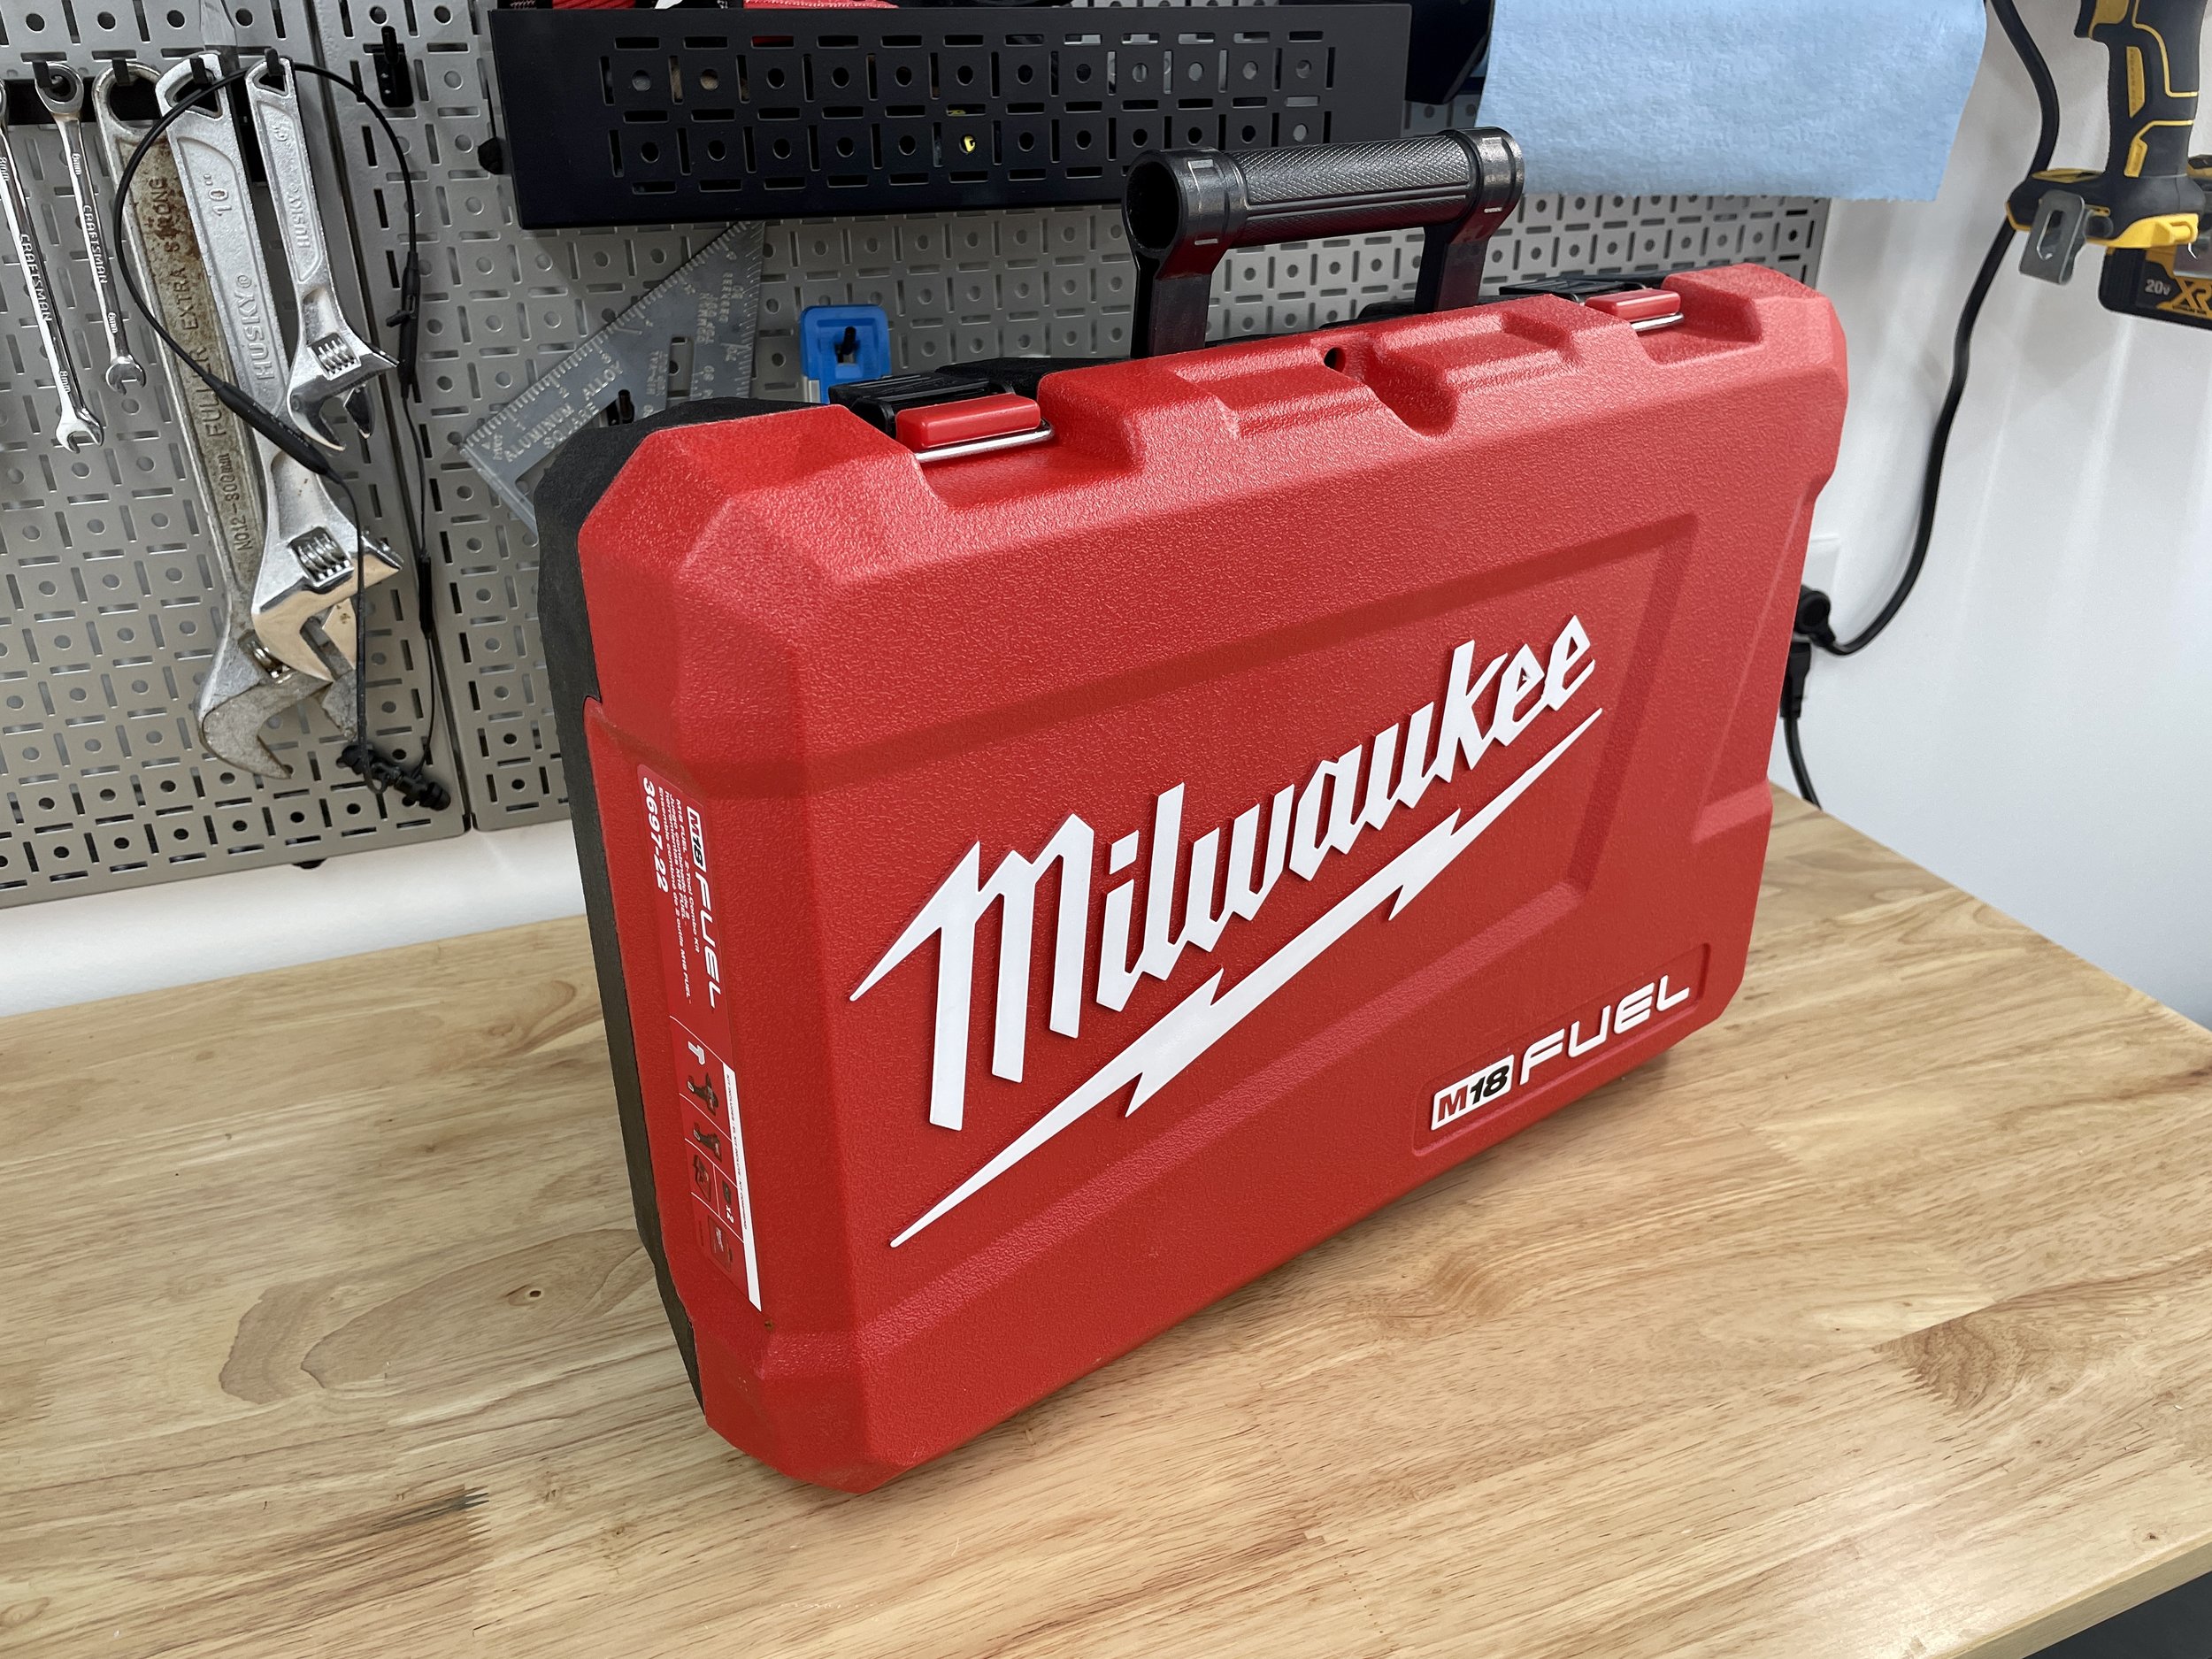 Milwaukee Gen 4 M18 Fuel Hammer Drill & Impact Review — John Builds It